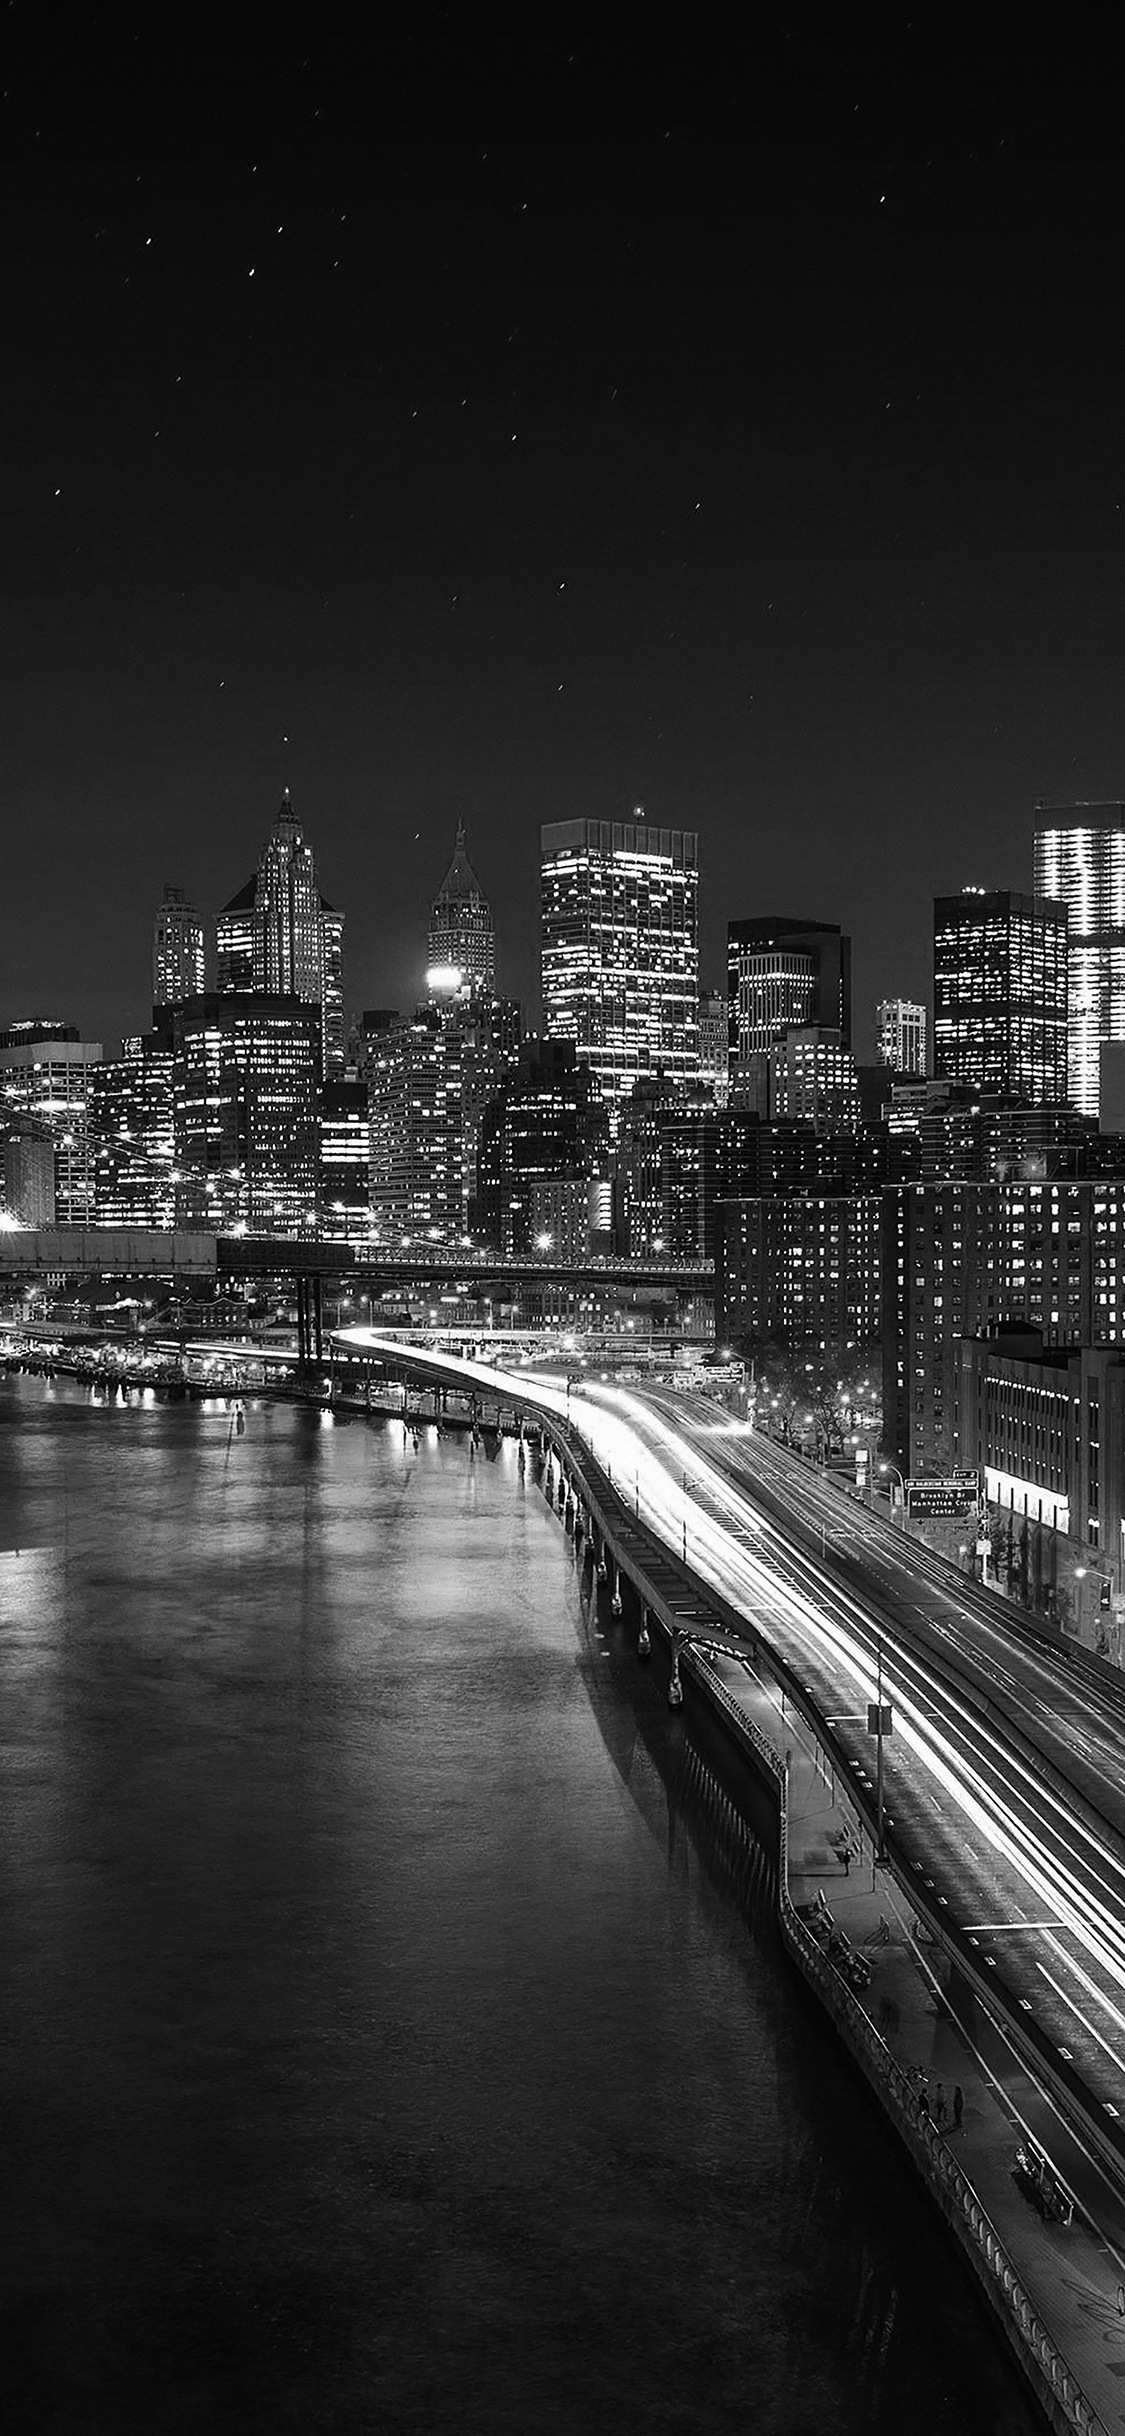 iPhone X wallpaper. night city view lights dark bridge nature